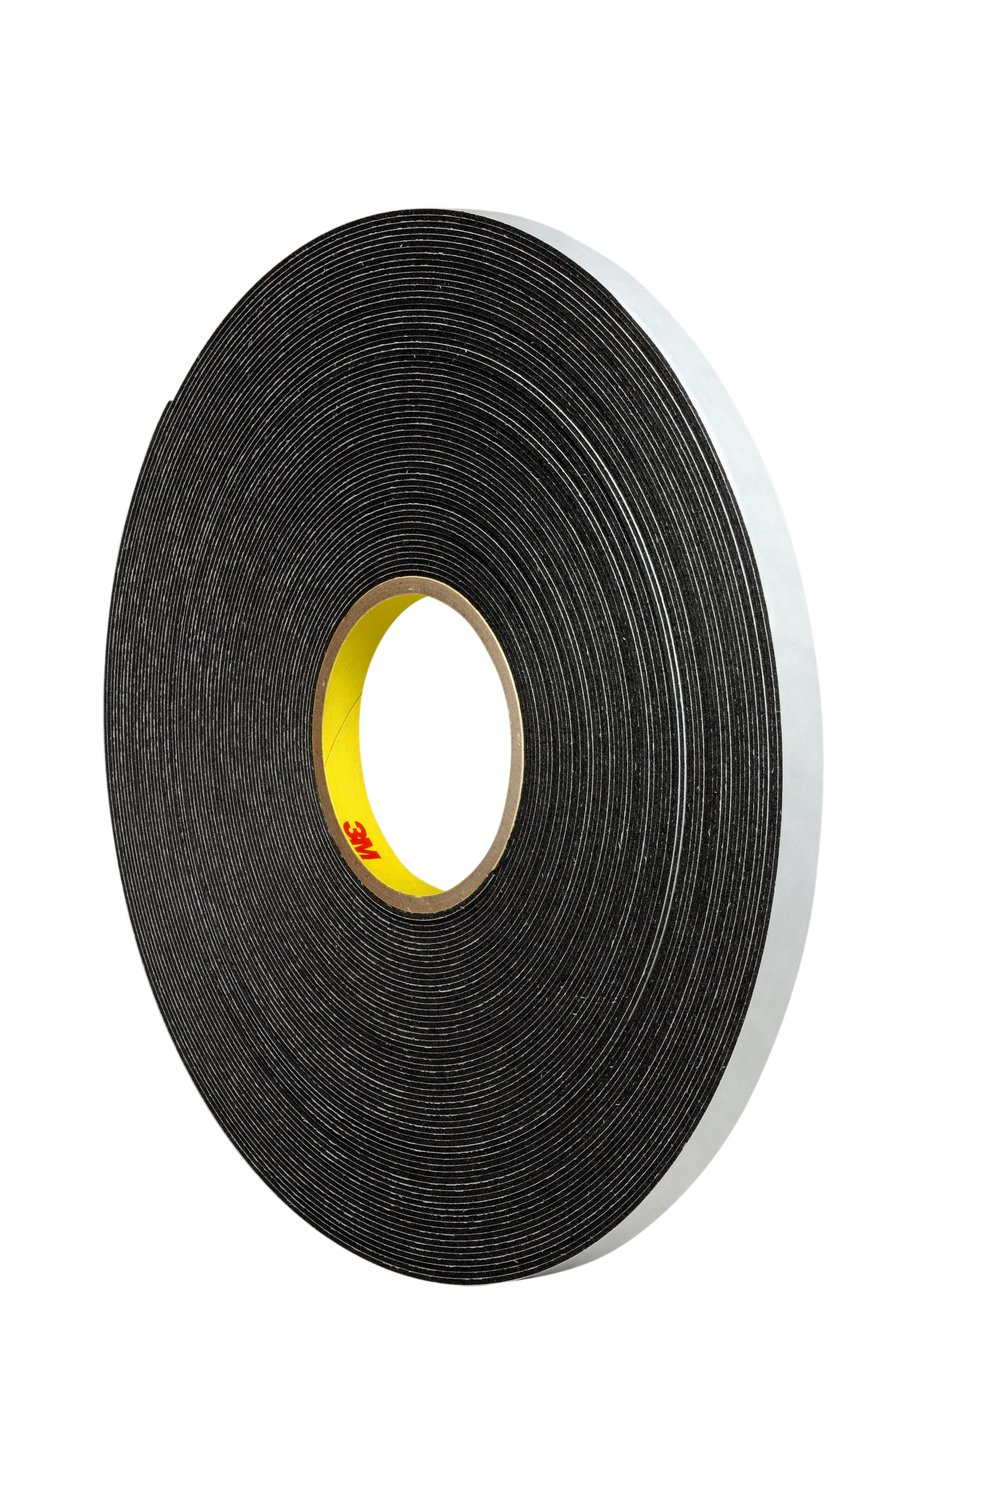 7000123703 - 3M Double Coated Polyethylene Foam Tape 4466, Black, 3/4 in x 36 yd, 62
mil, 12 rolls per case